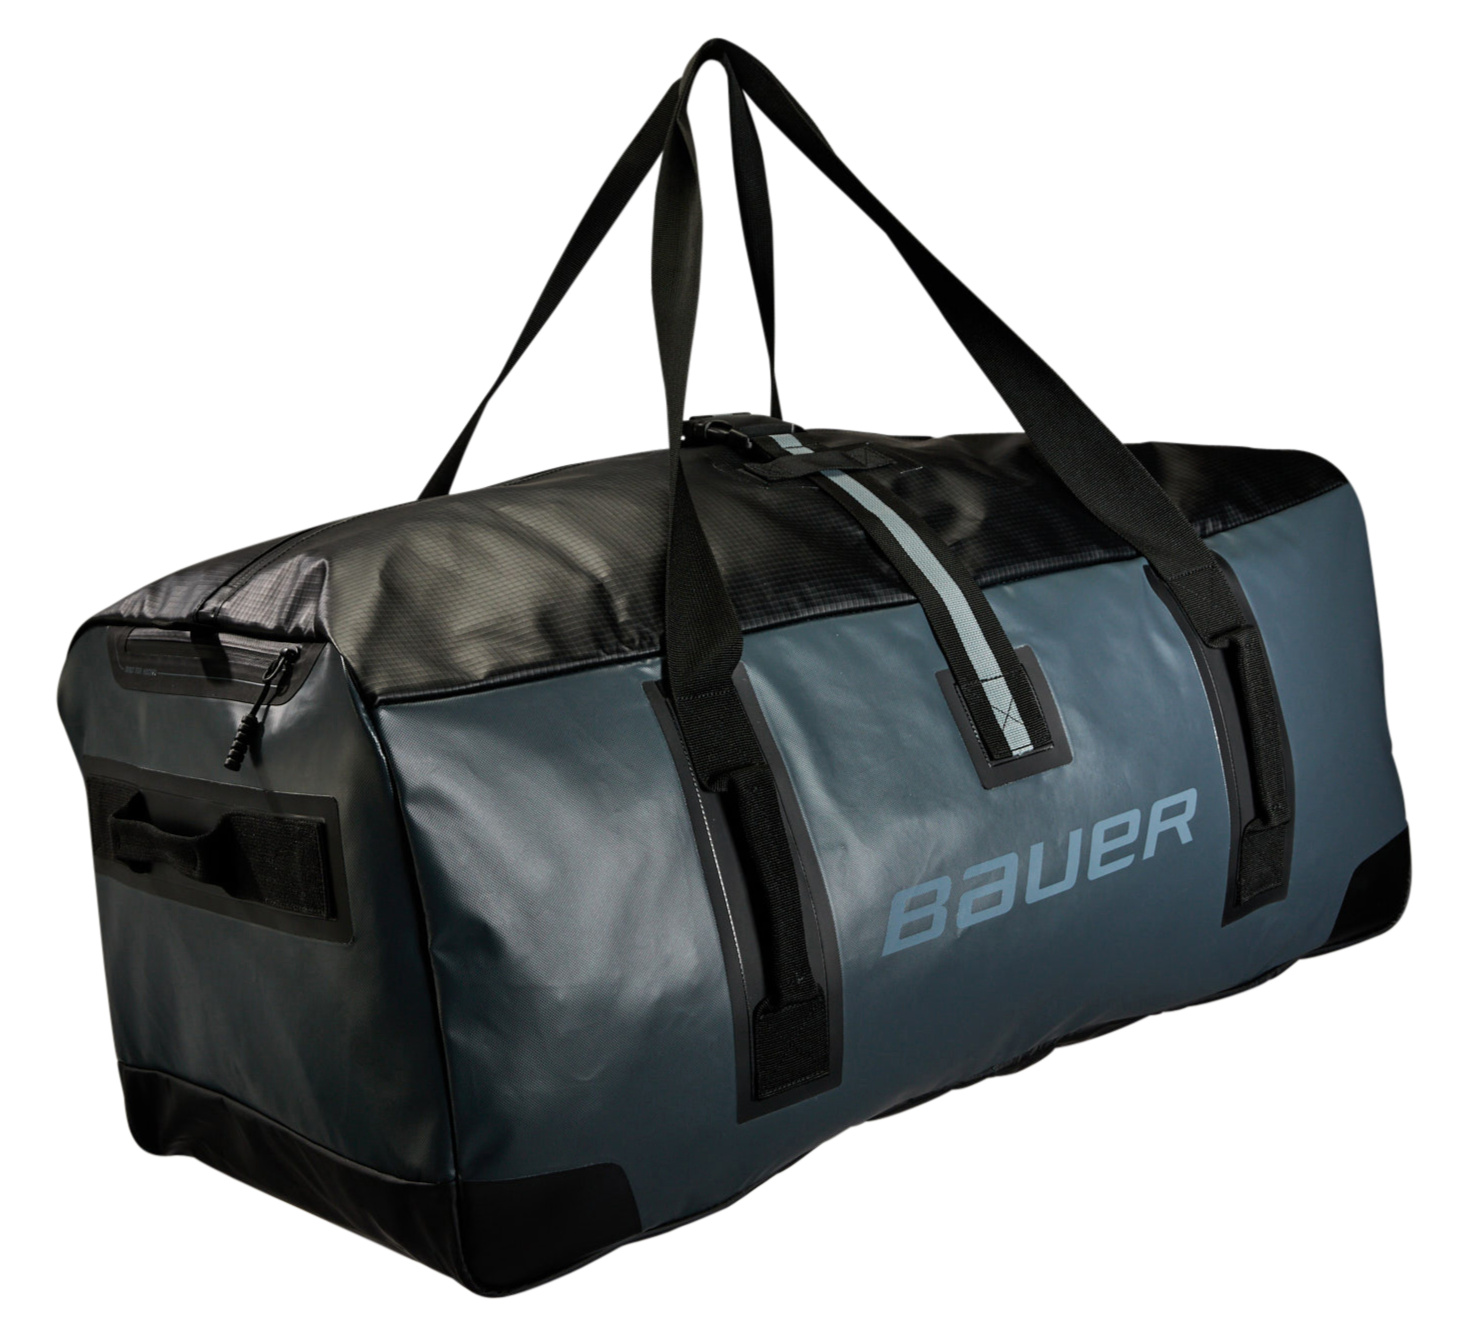 Bauer Tactical Carry Bag